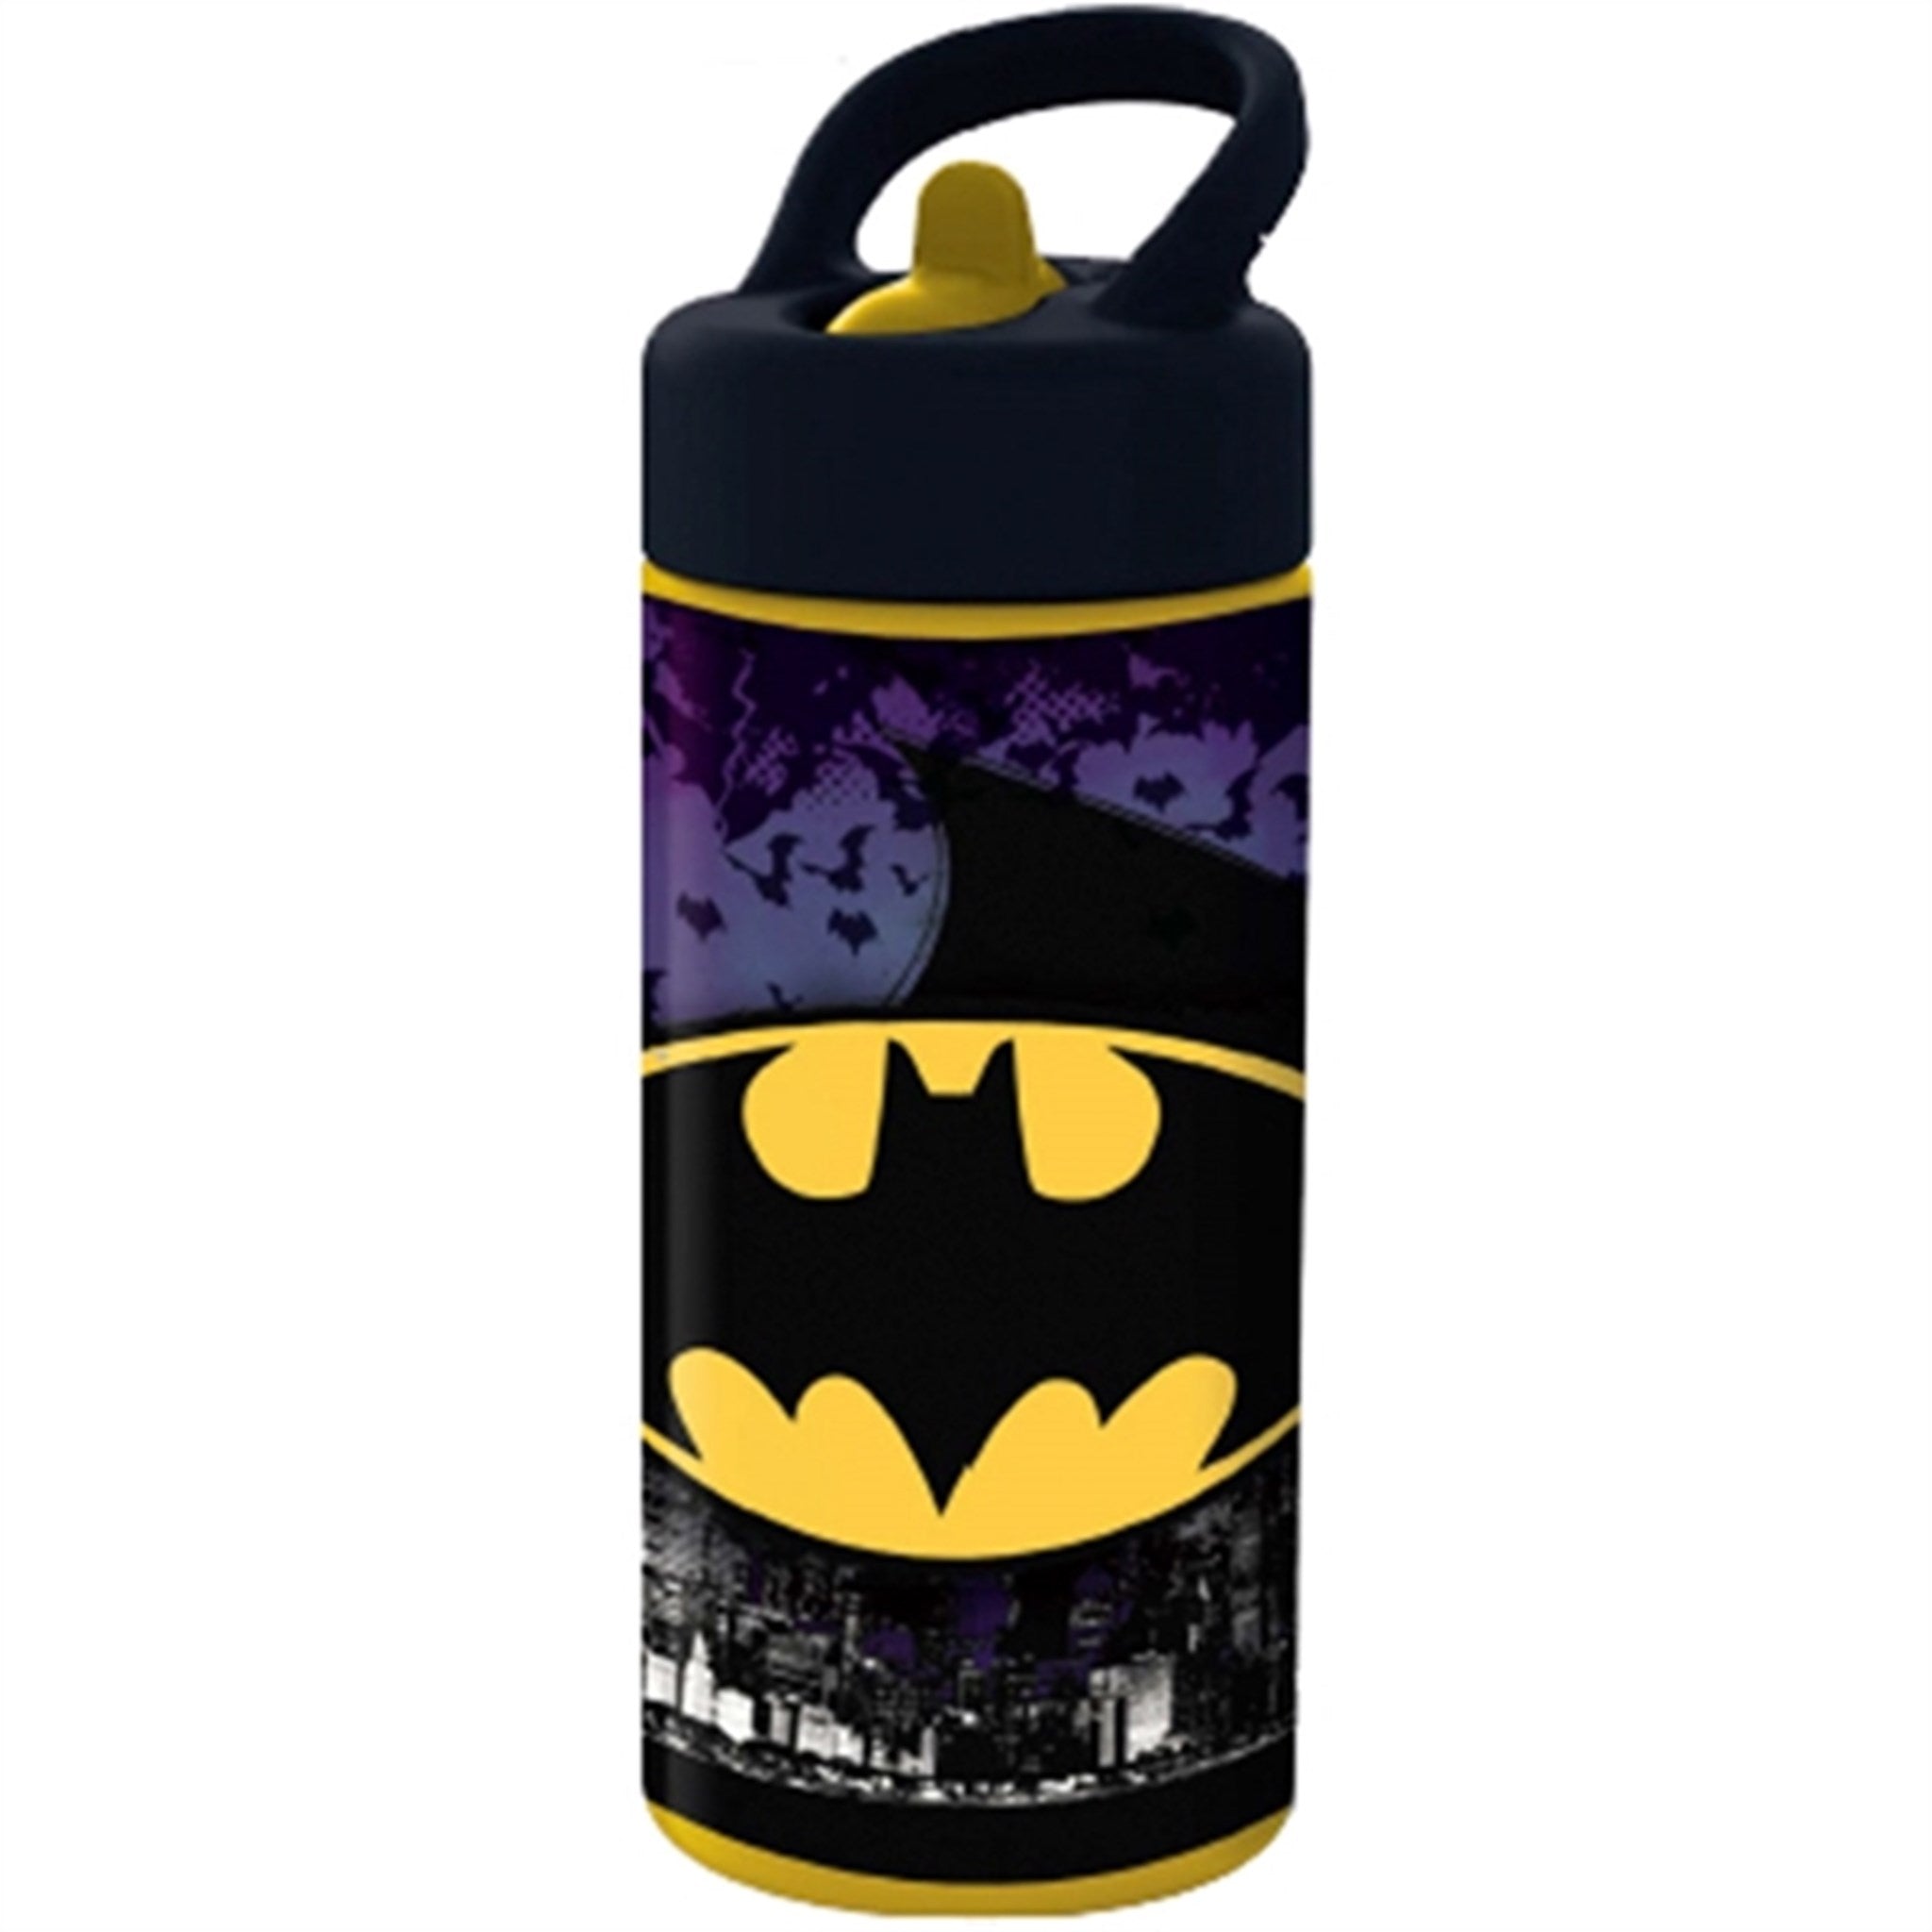 Euromic Batman Water Bottle